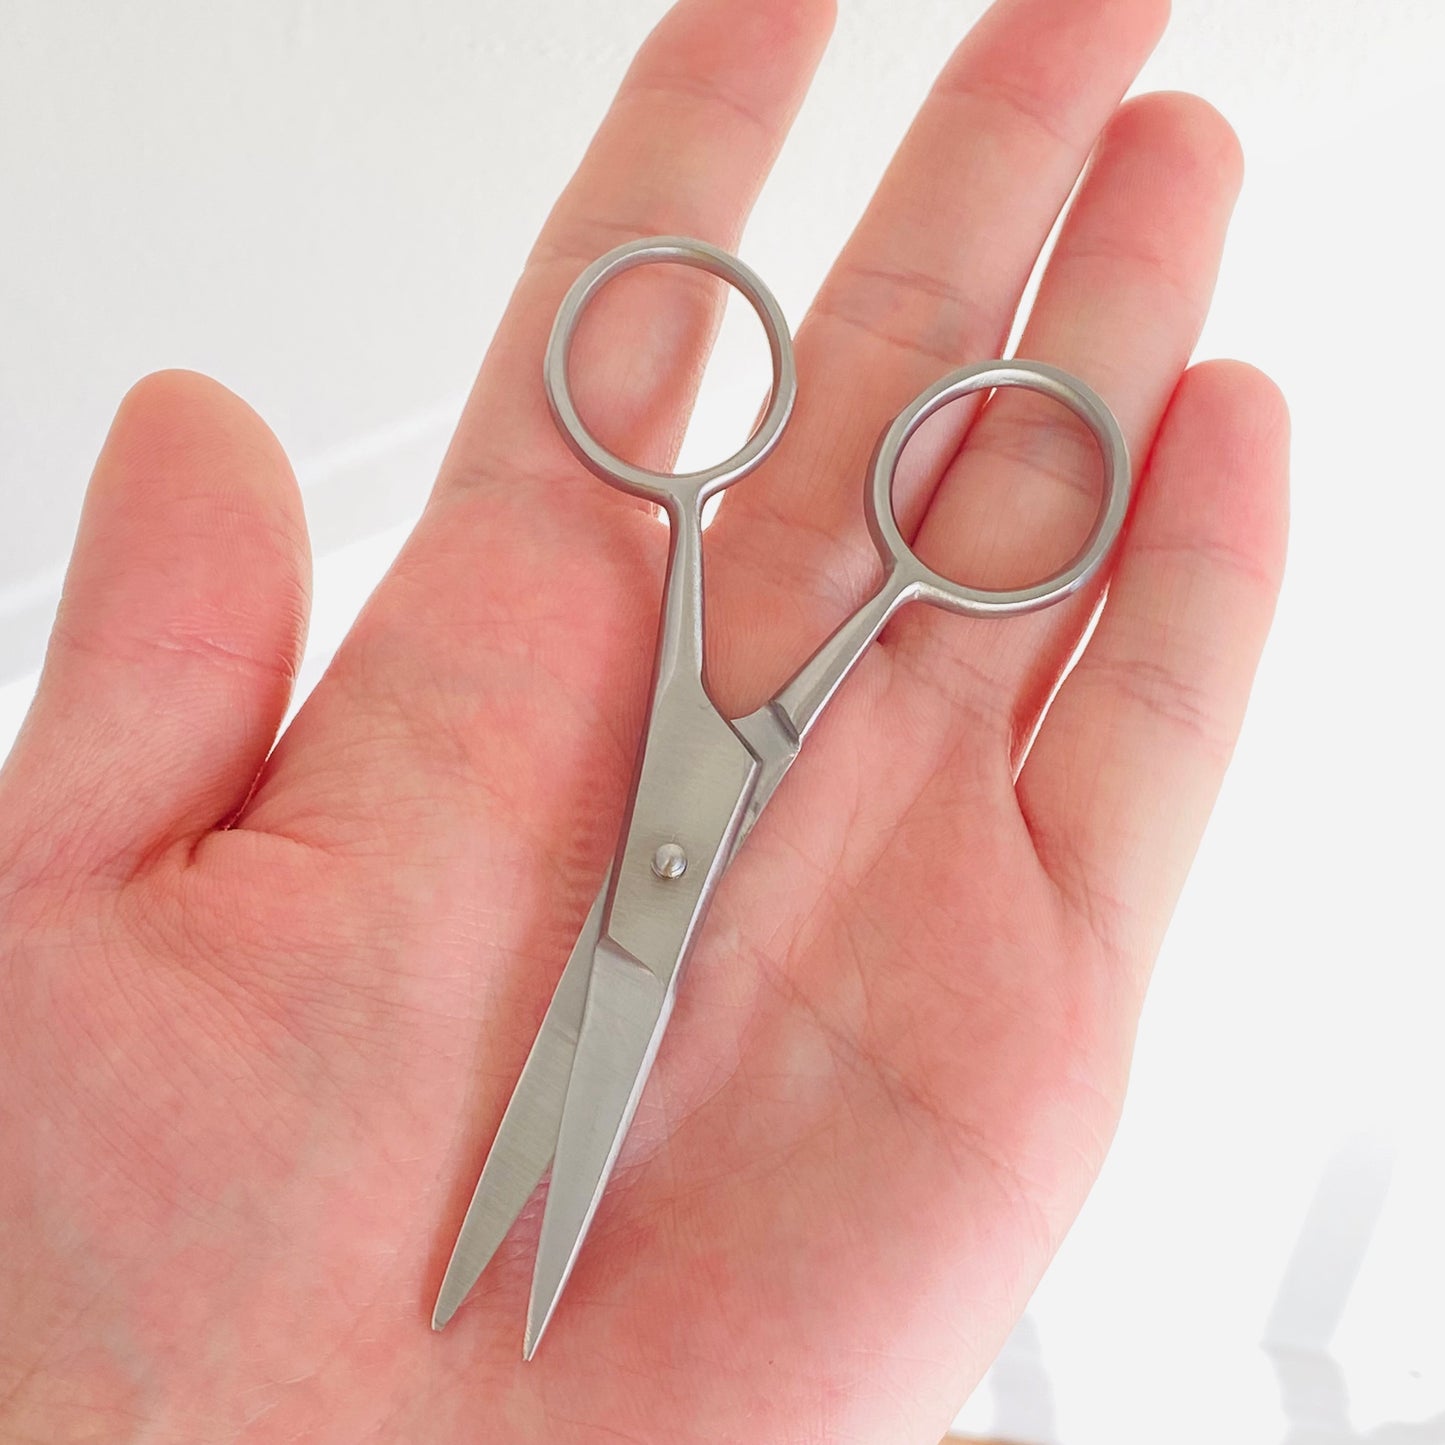 Premium Stainless Steel Scissors 4.5"